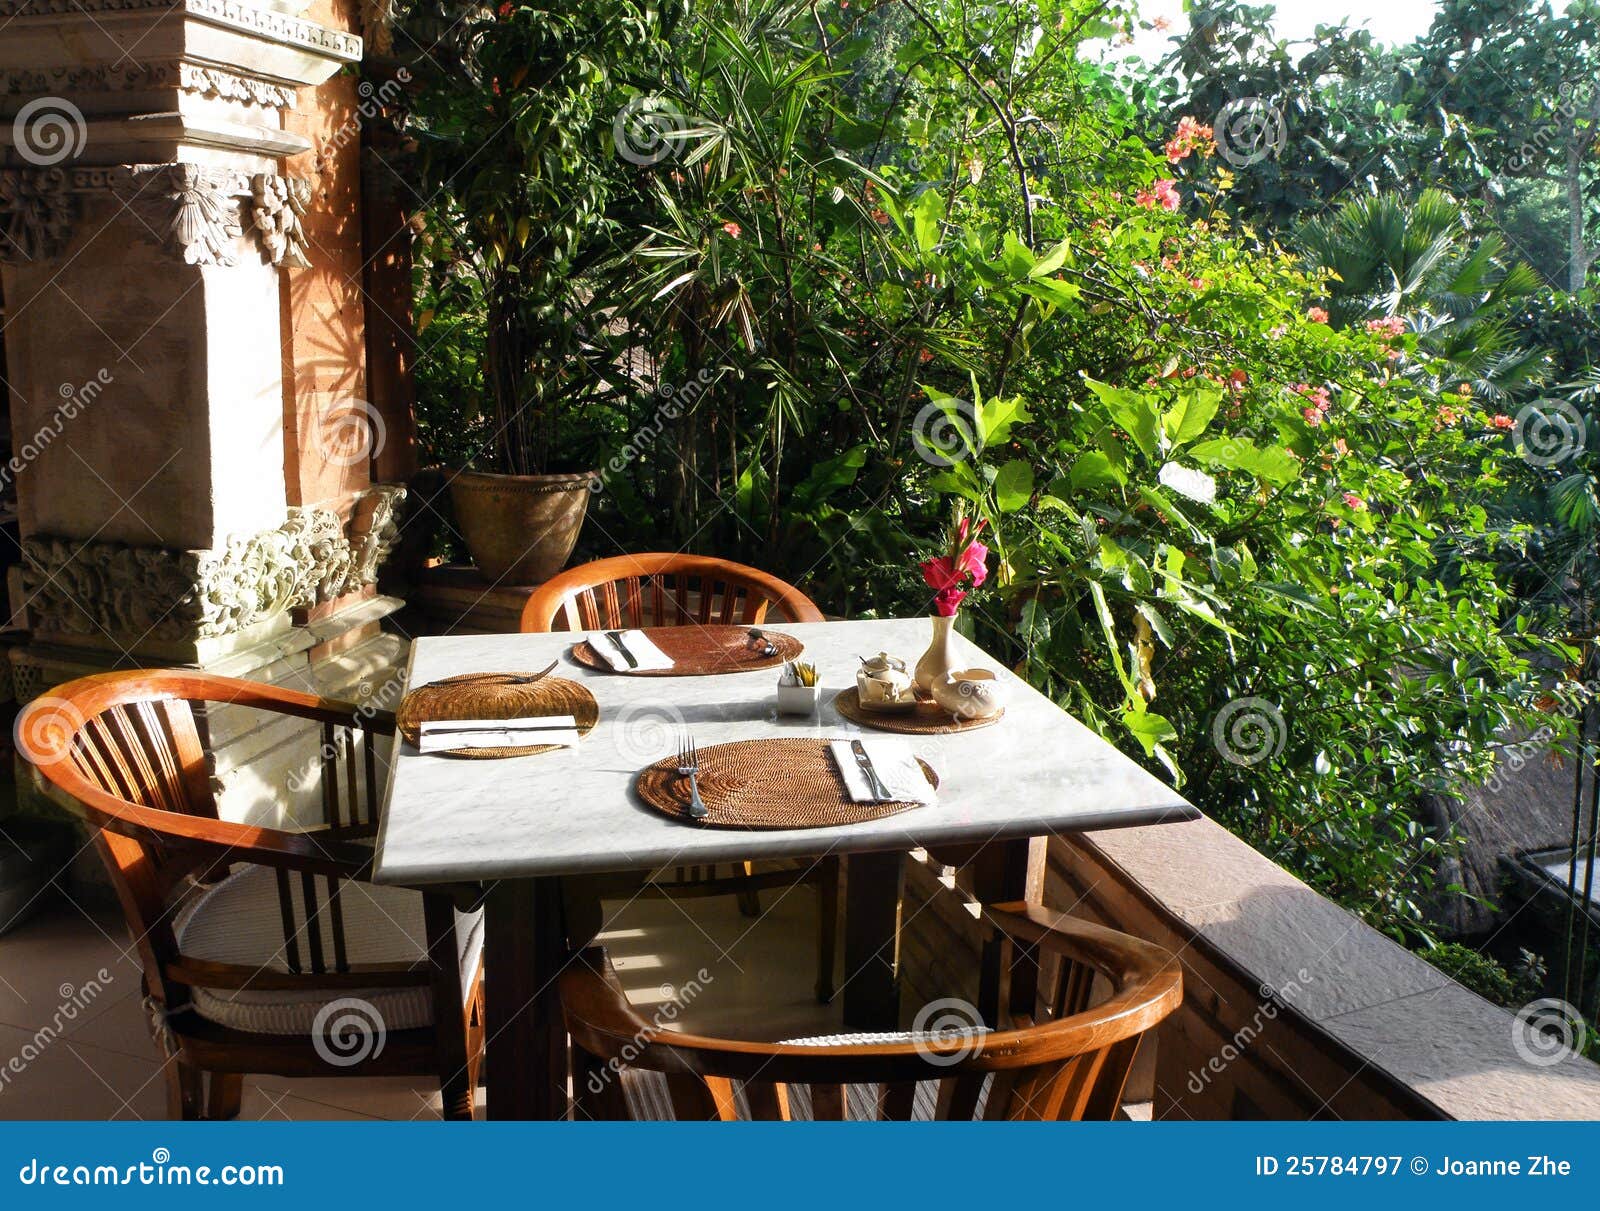 resort outdoor garden dining area